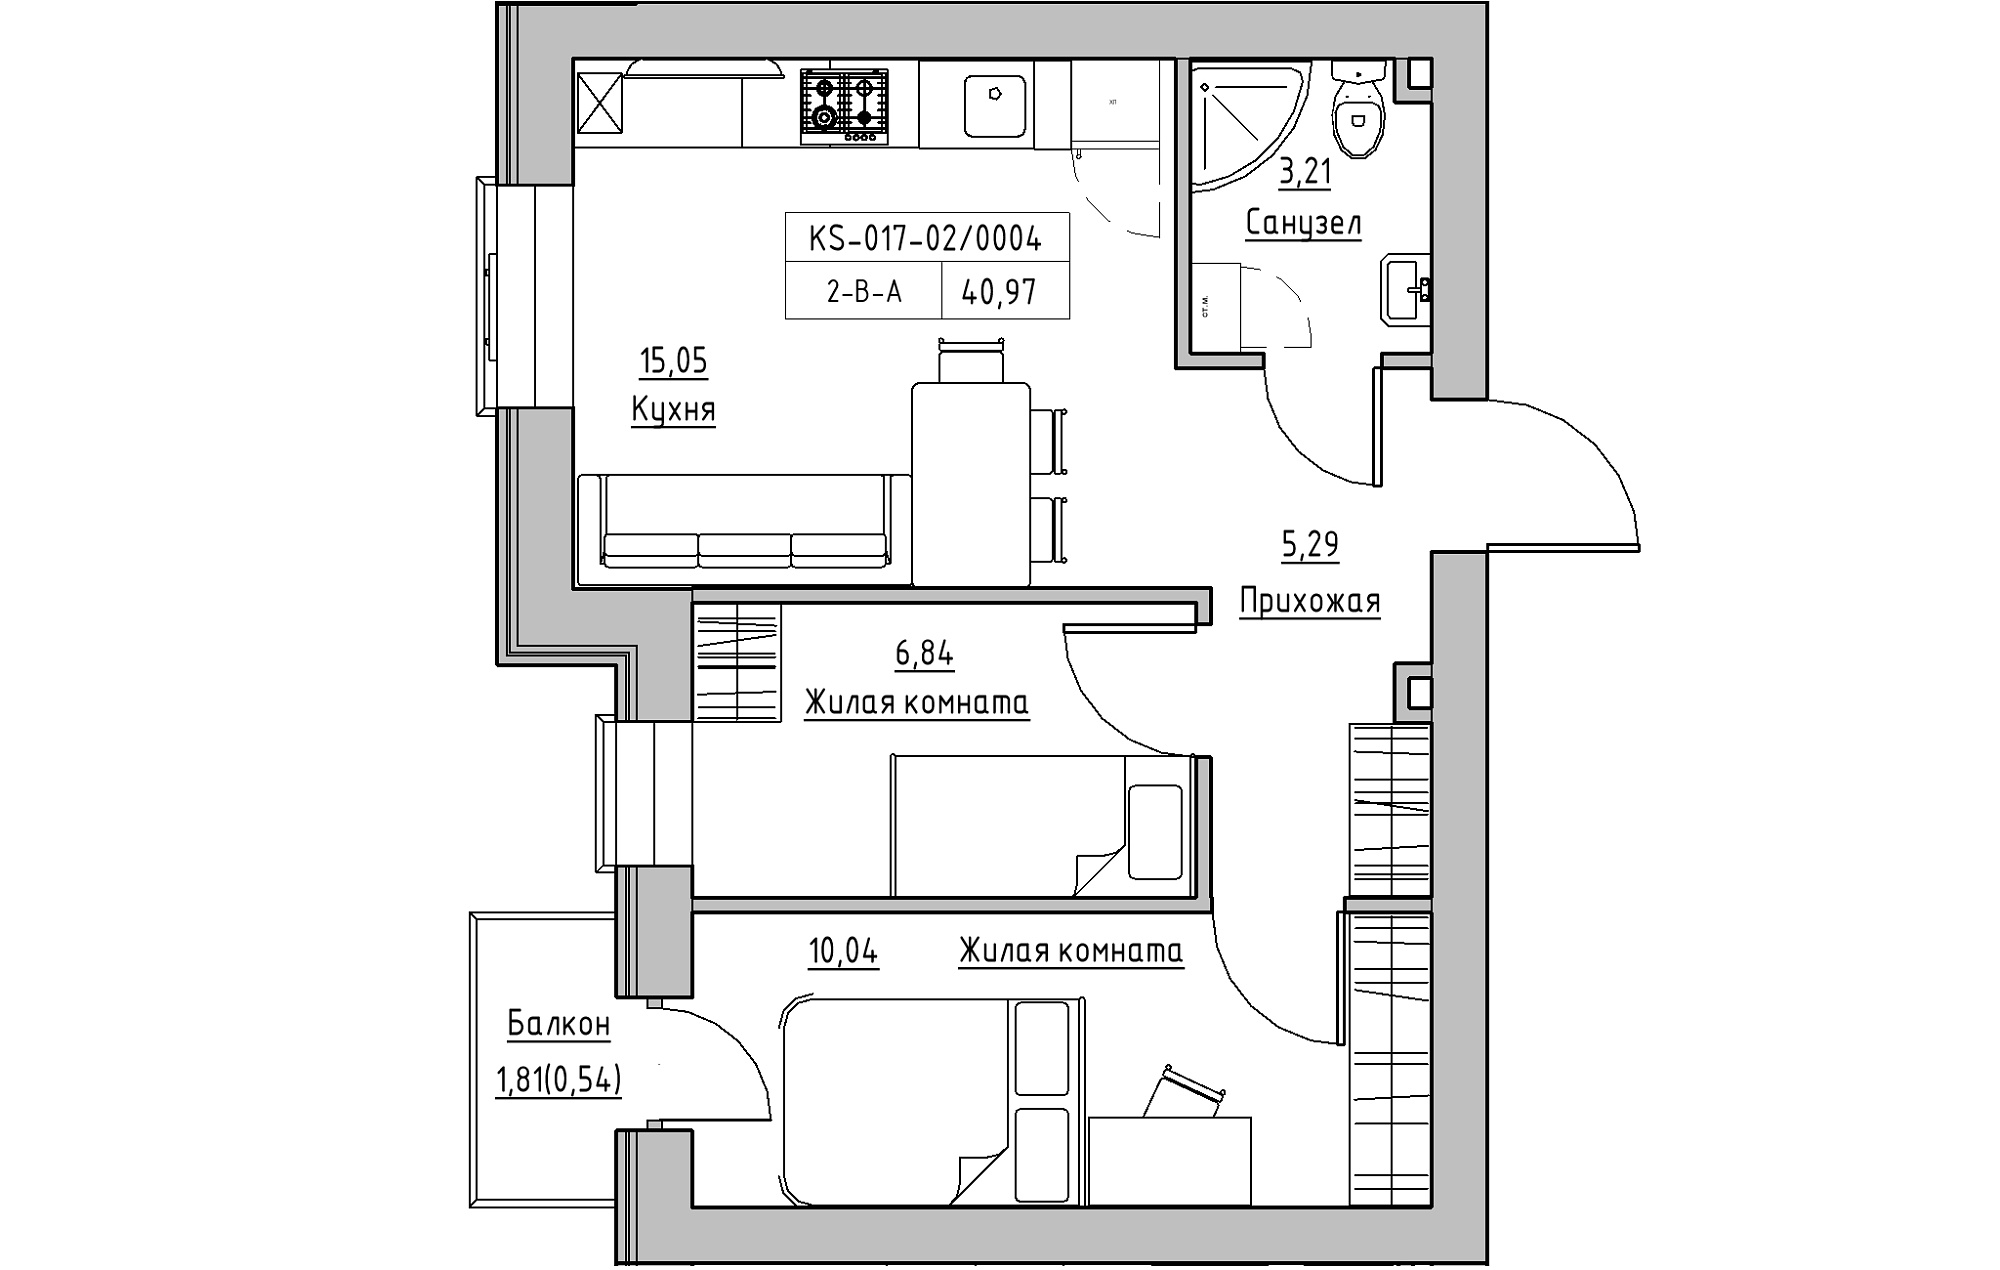 Планування 2-к квартира площею 40.97м2, KS-017-02/0004.